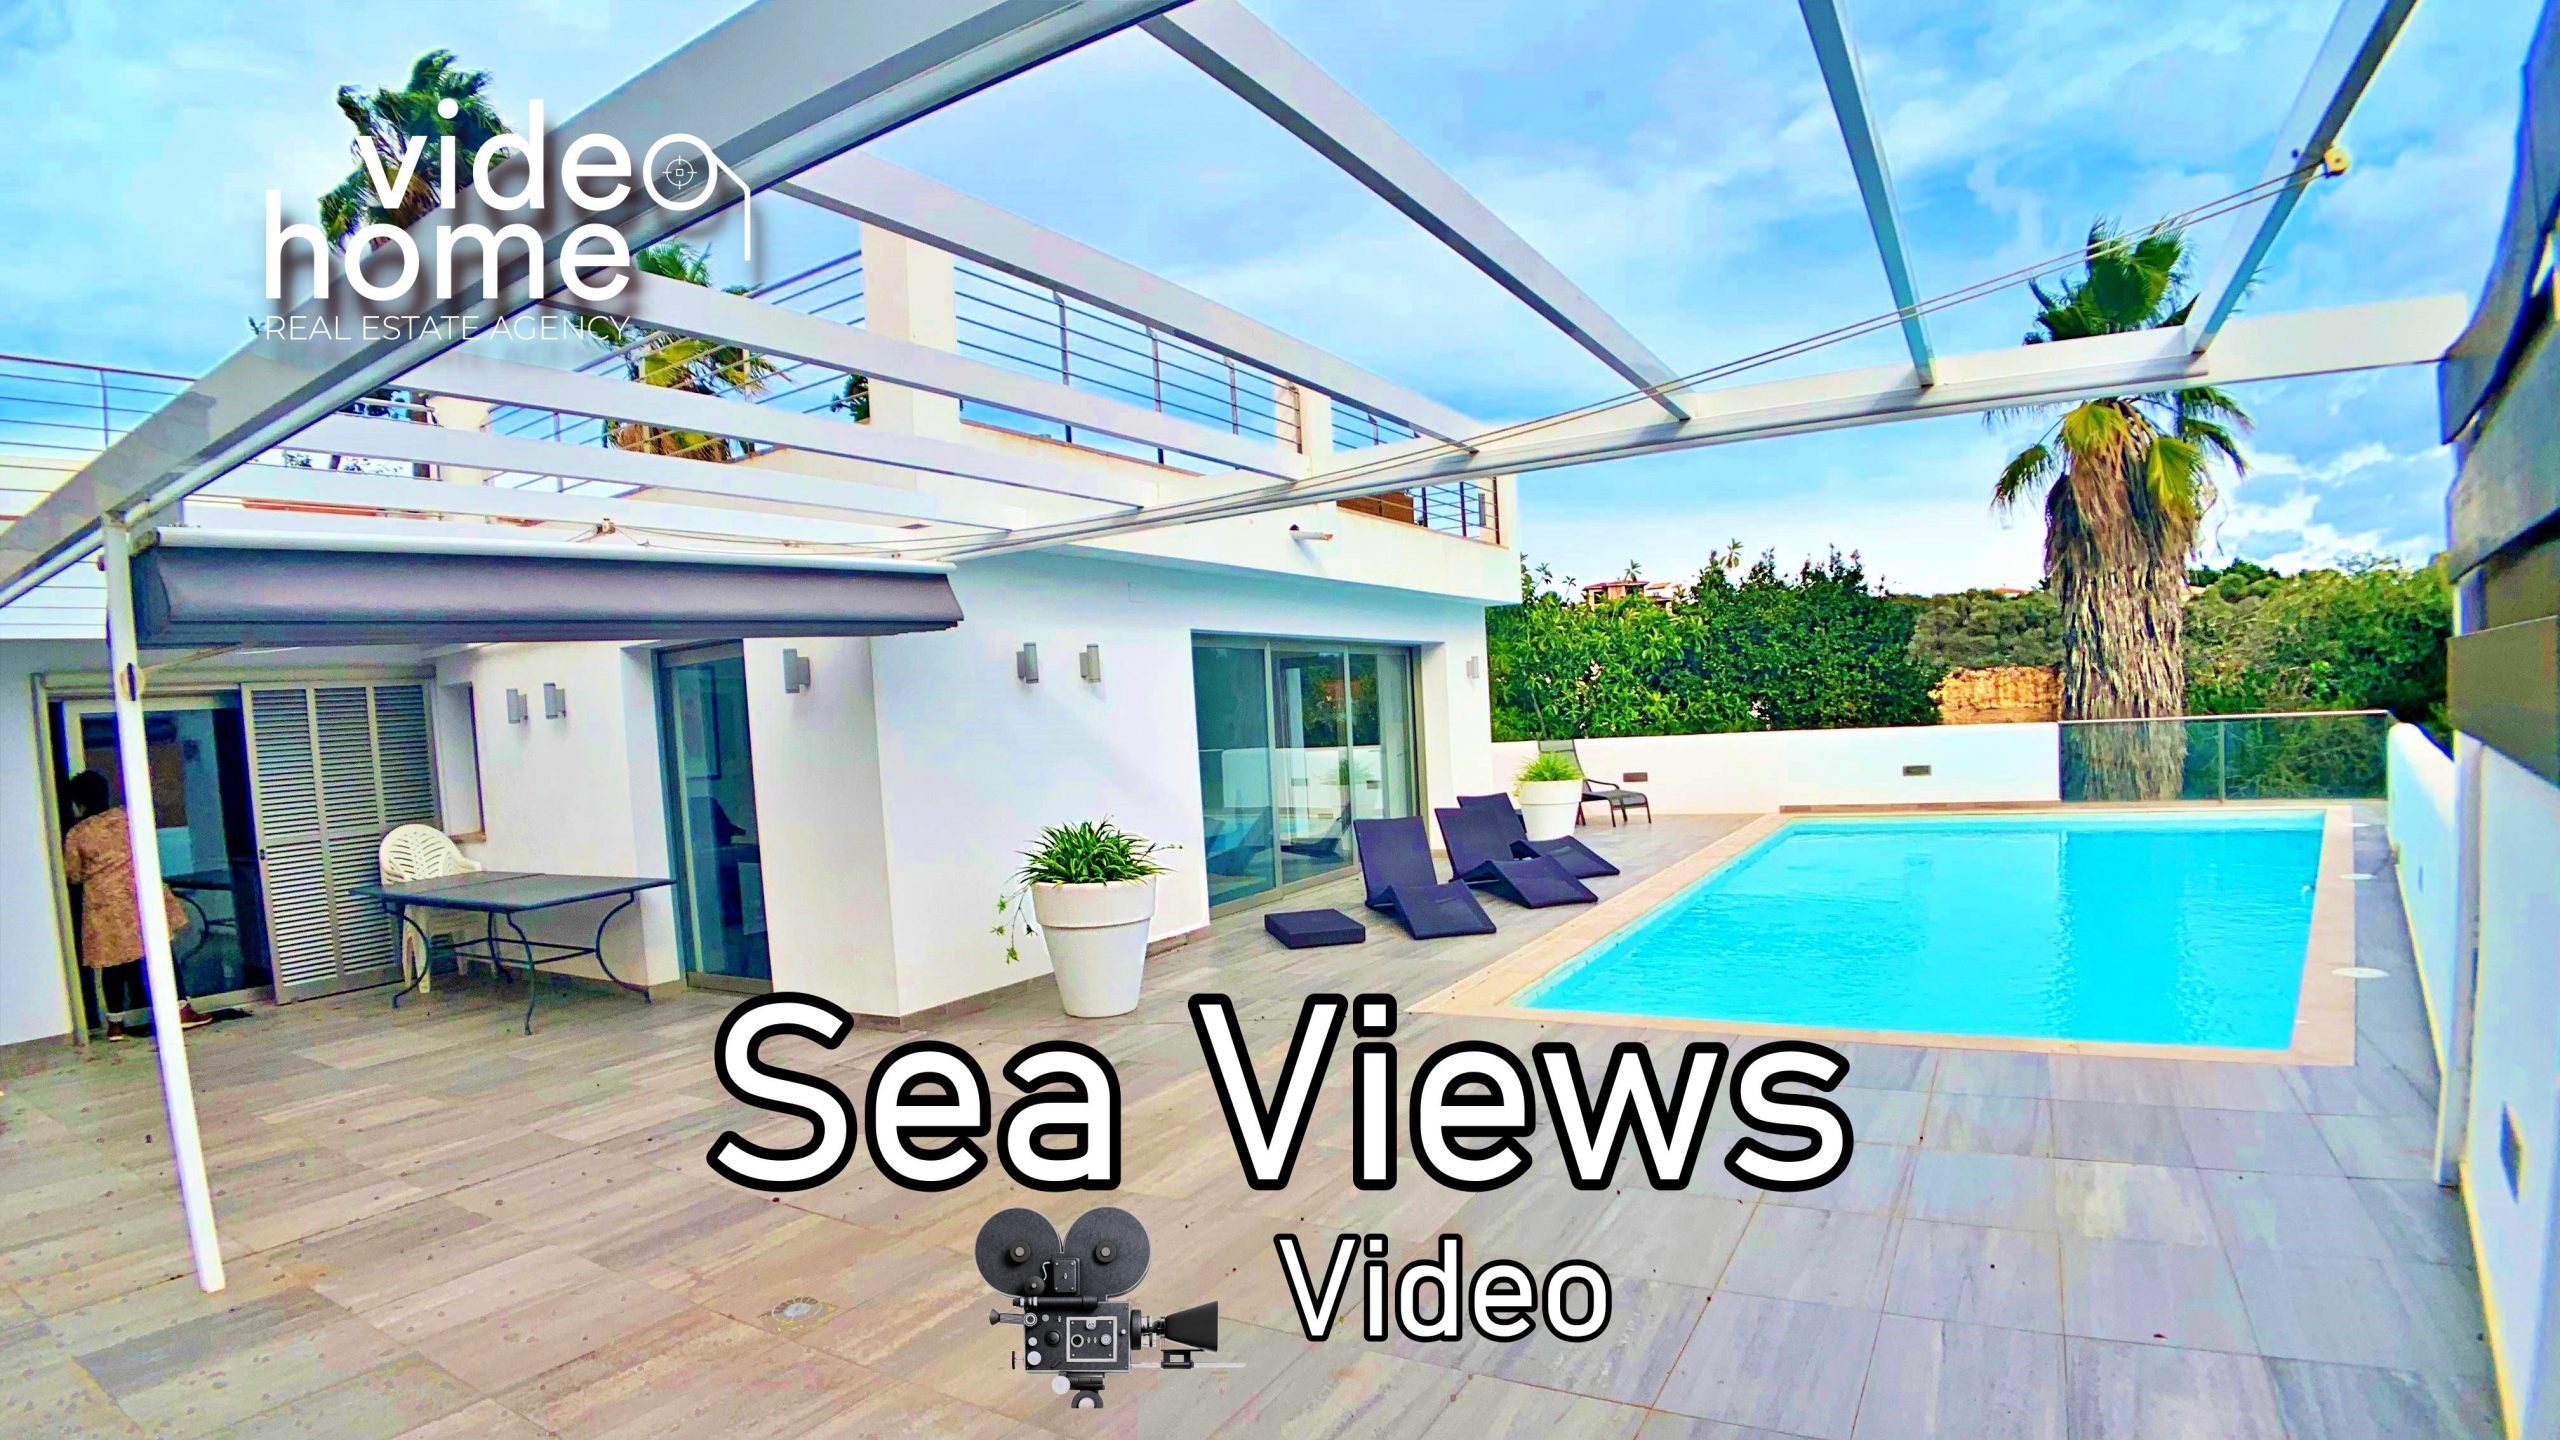 Casa moderna con piscina climatizada vistas al mar.